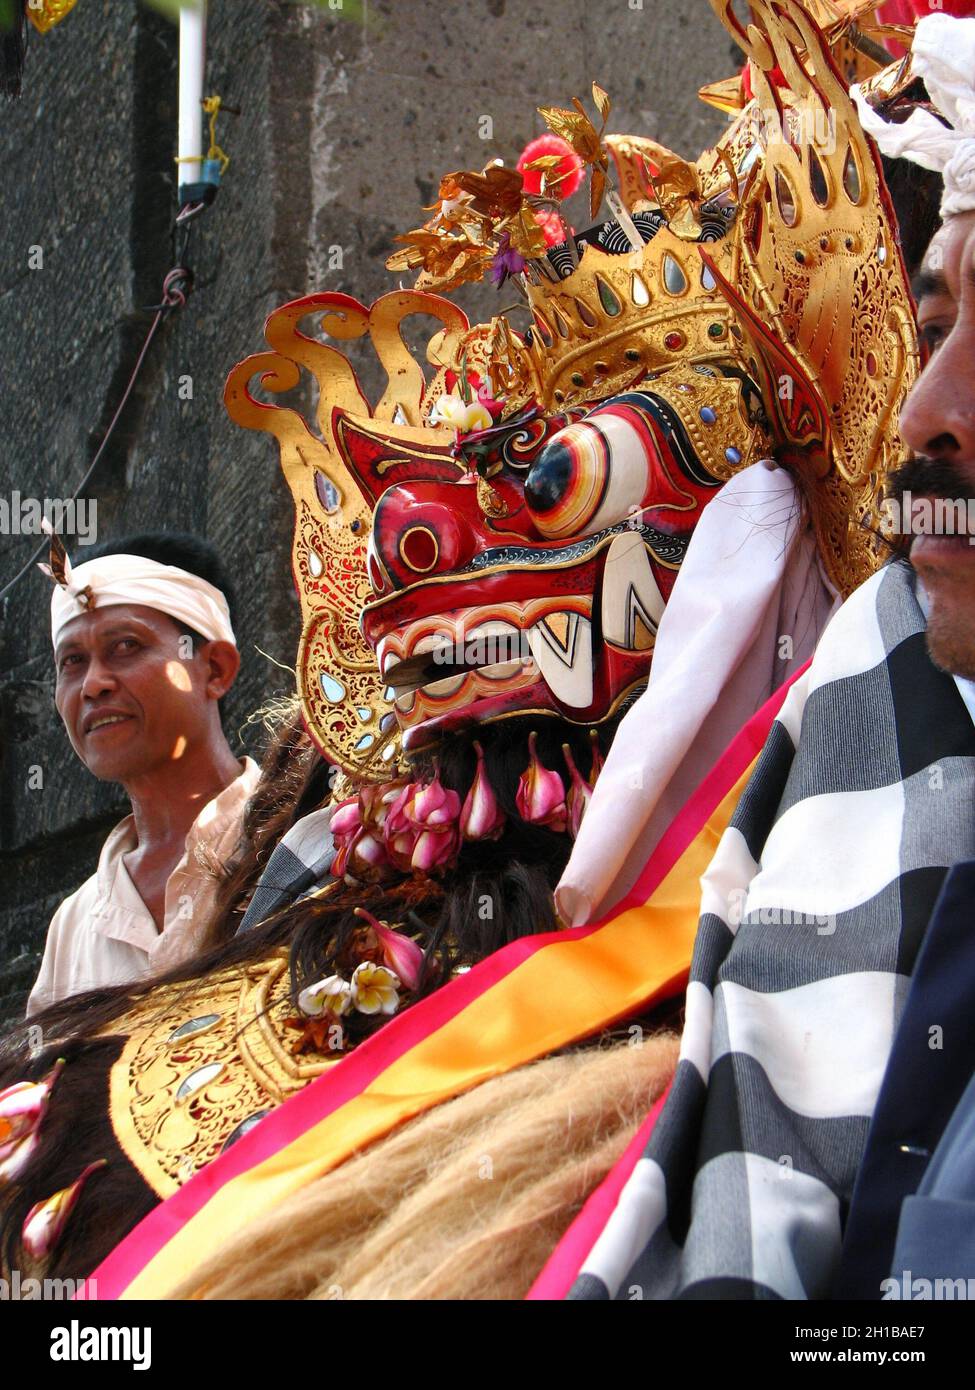 Nahaufnahme der Barong-Maske, die für die Barong-Tanzvorstellung in Ubud vorbereitet wurde. Balinesische hinduistische Tradition, Kunst und Kultur. Beliebte Touristenattraktion. Stockfoto